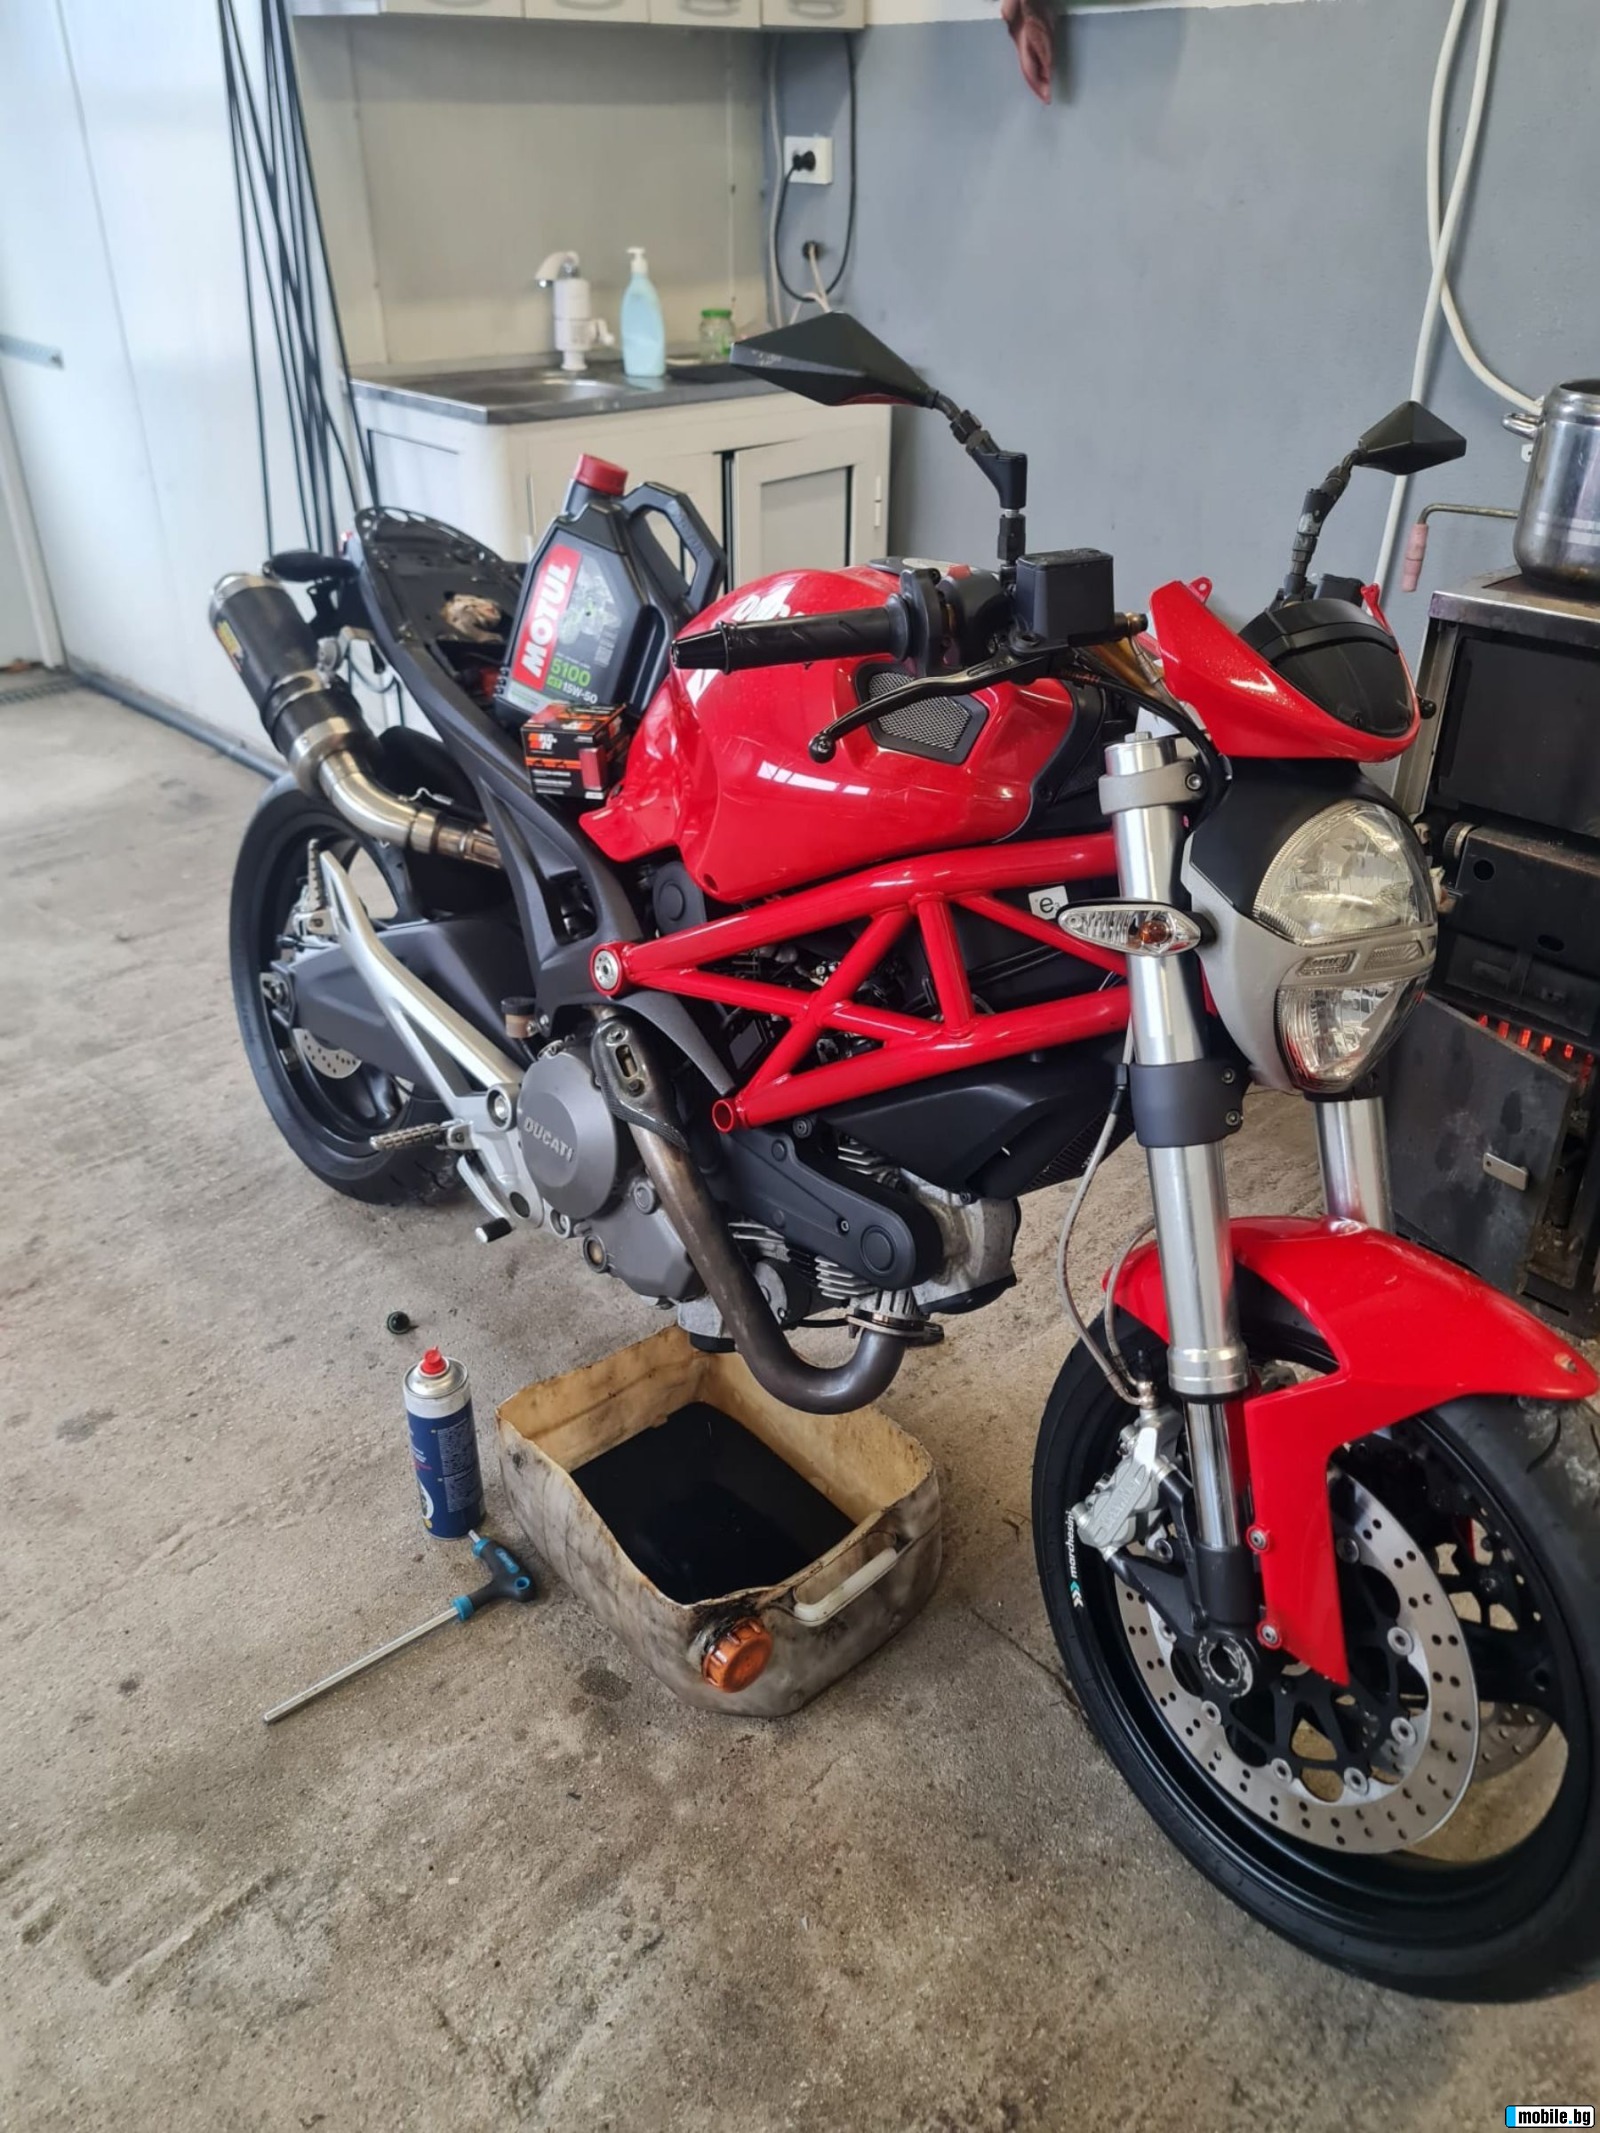 Ducati Monster 696 | Mobile.bg   8